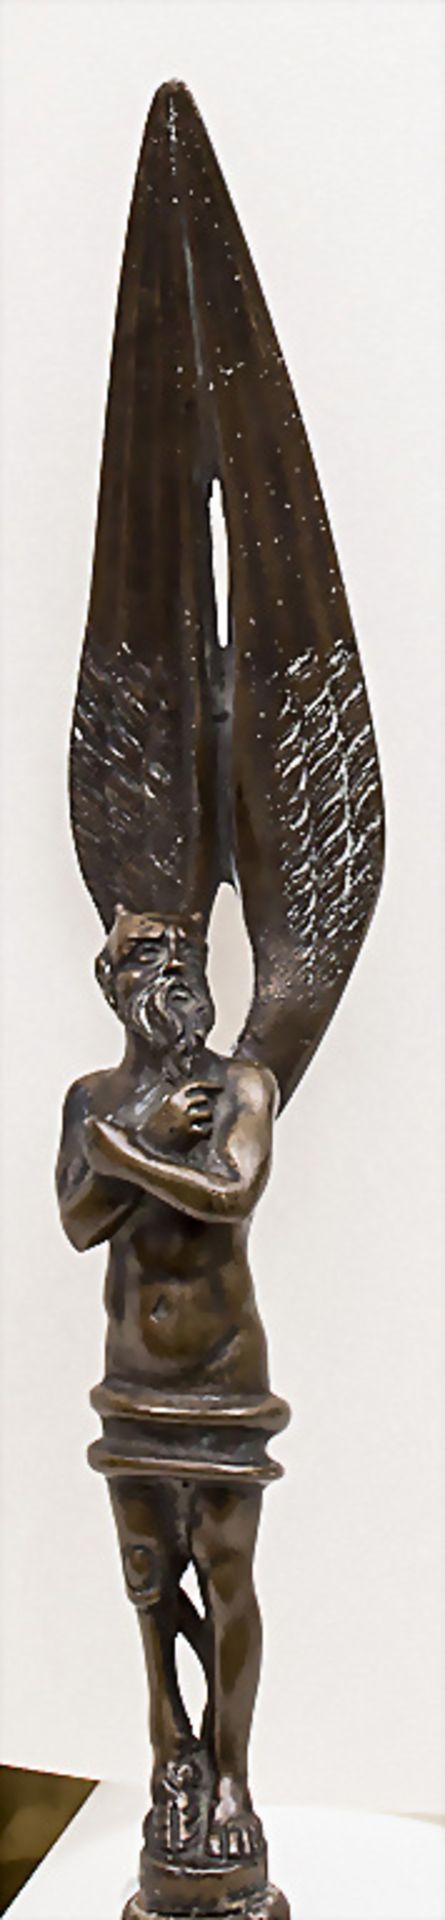 Bronze Brieföffner mit Teufels-Skulptur / A bronze letter opener with the sculpture of a devil ... - Bild 3 aus 3